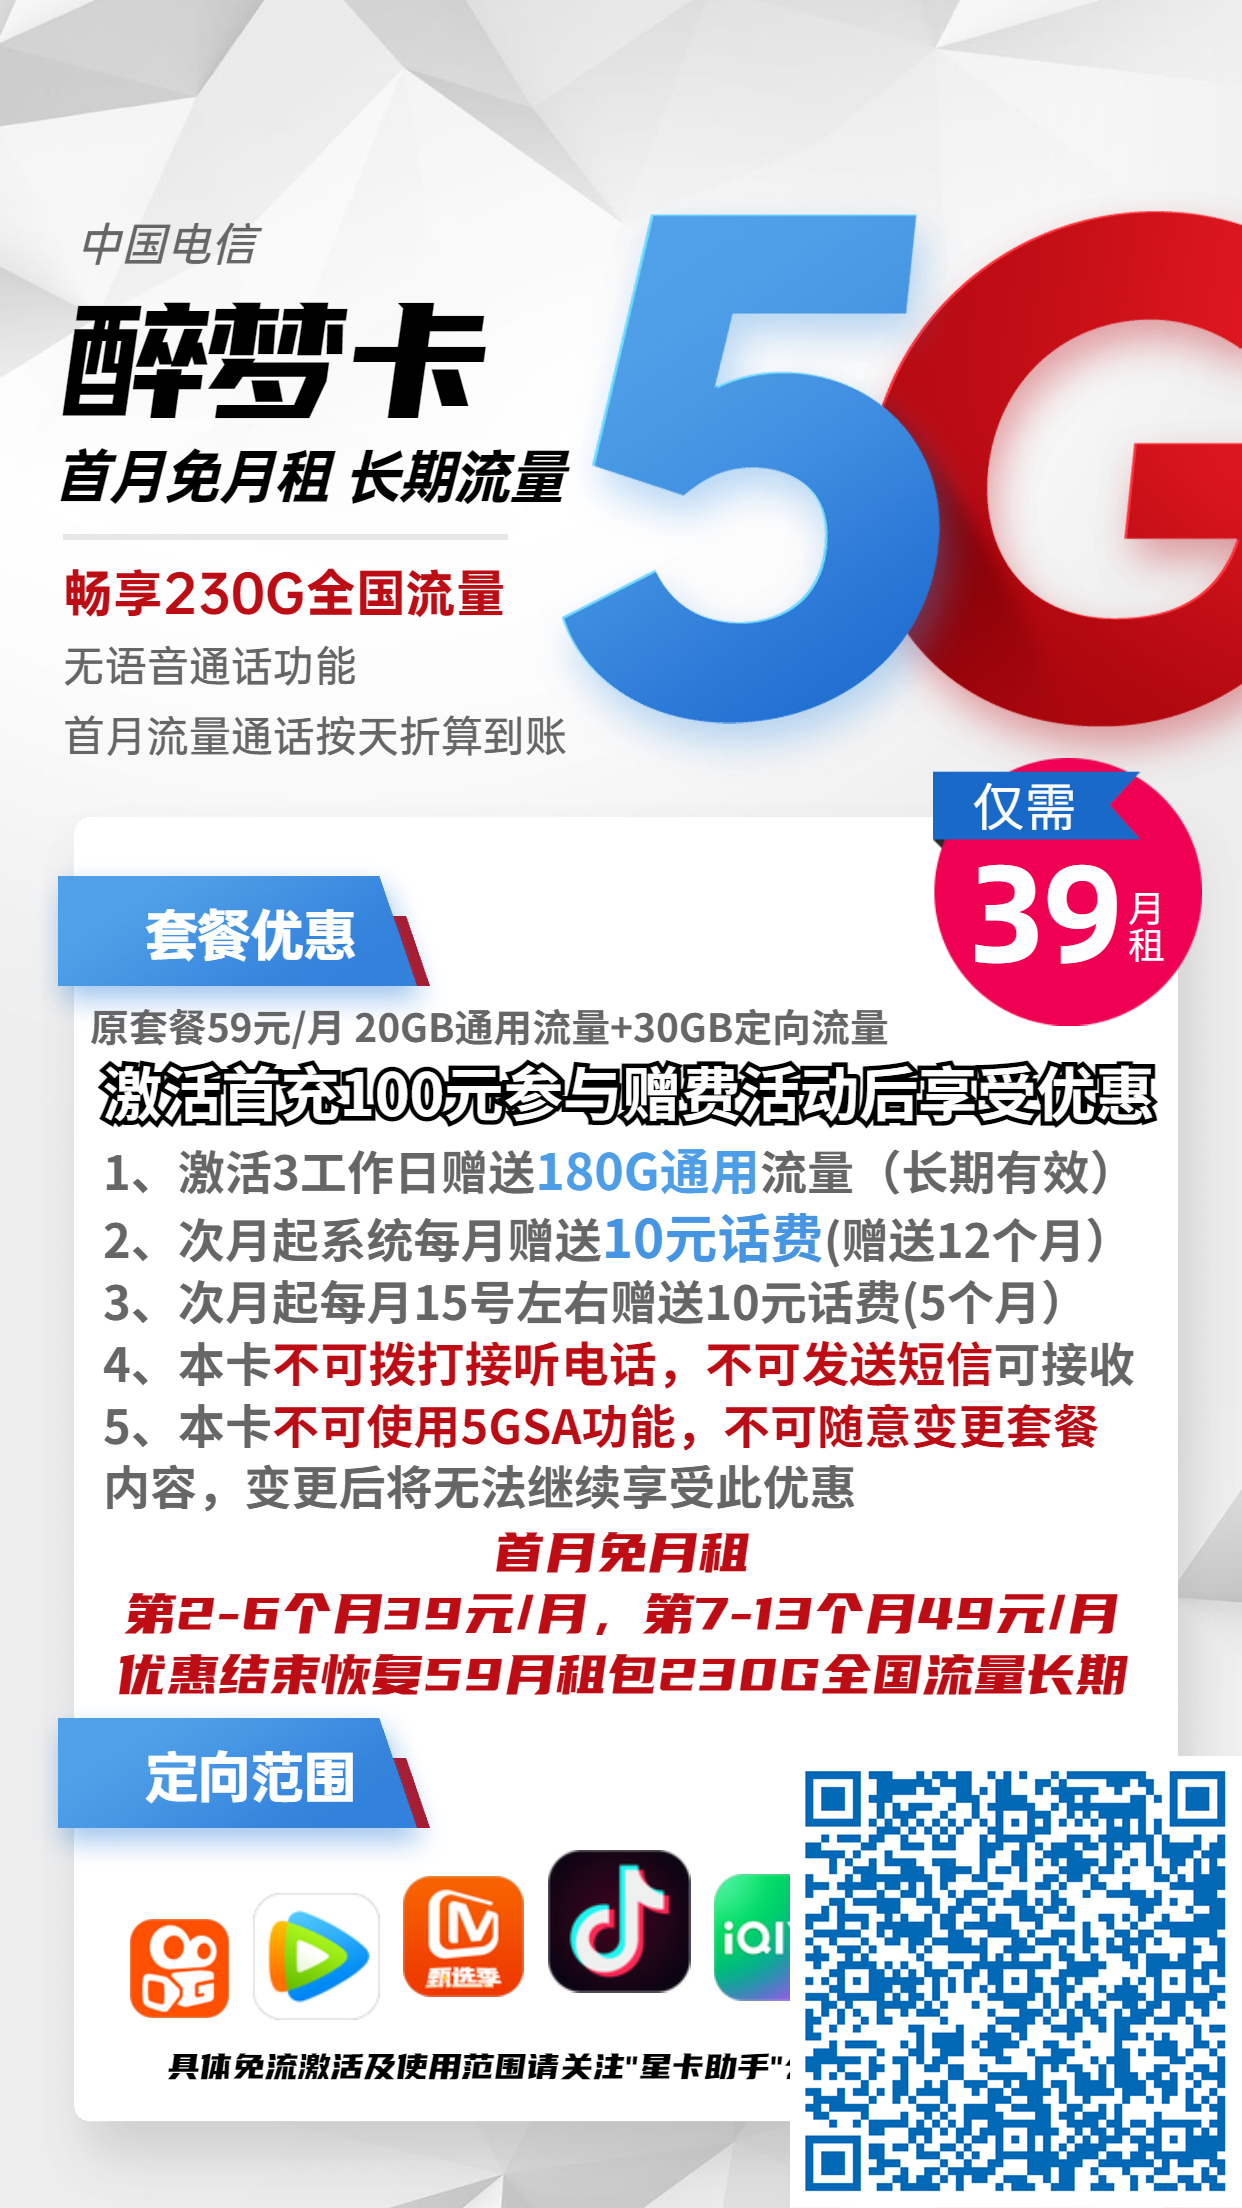 北京电信醉梦卡39元月包200G通用流量+30G定向流量+无语音功能